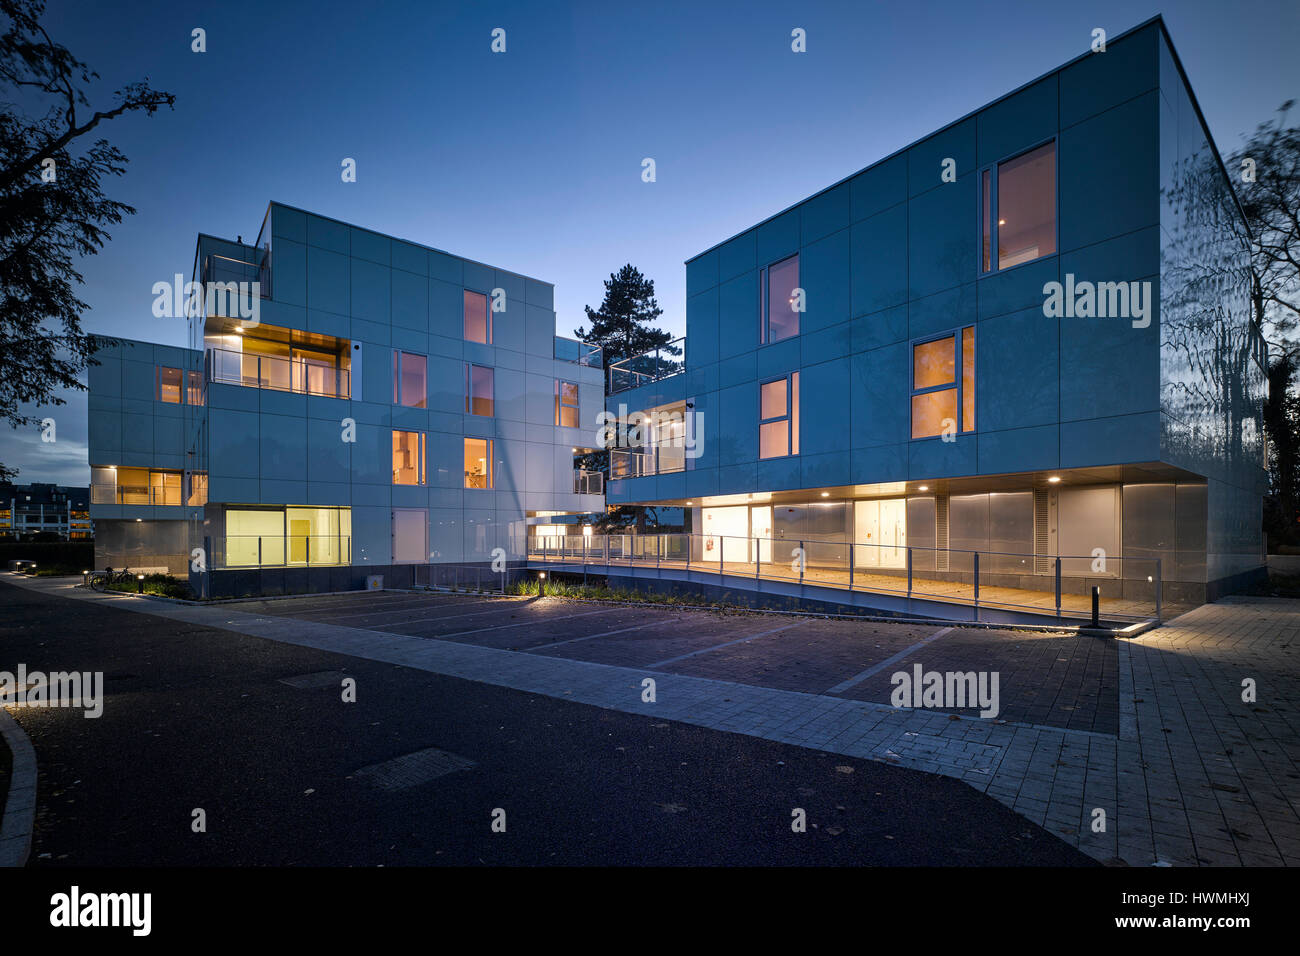 Abenddämmerung weiten Blick von außen zeigt beleuchteten Innenraum. Dunluce Apartments, Ballsbridge, Irland. Architekt: Derek Tynan Architekten, 2016. Stockfoto